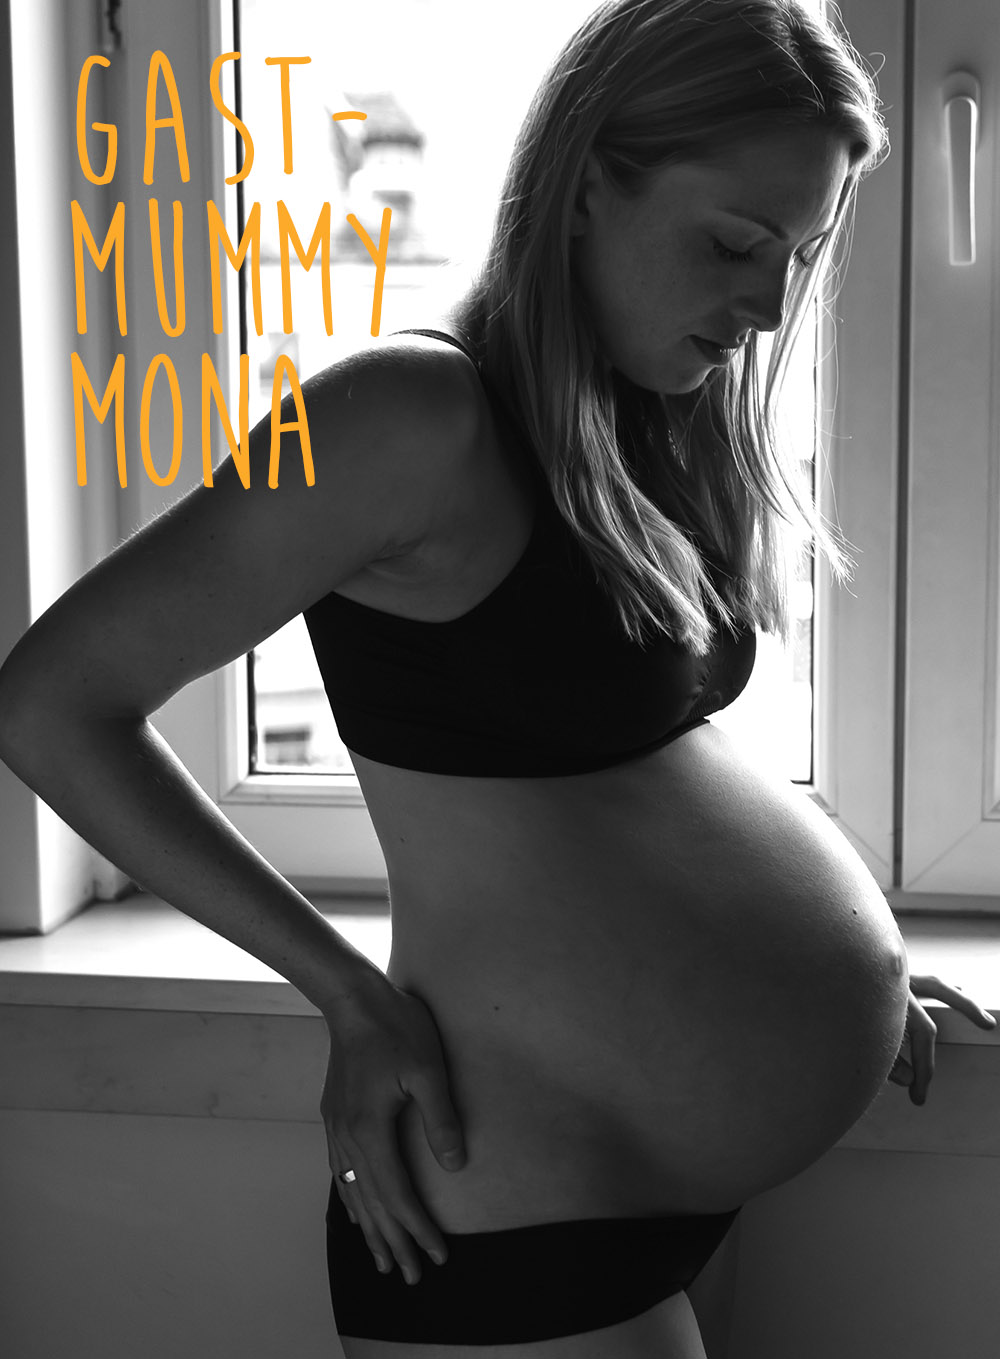 Gast_Mummy_Mona